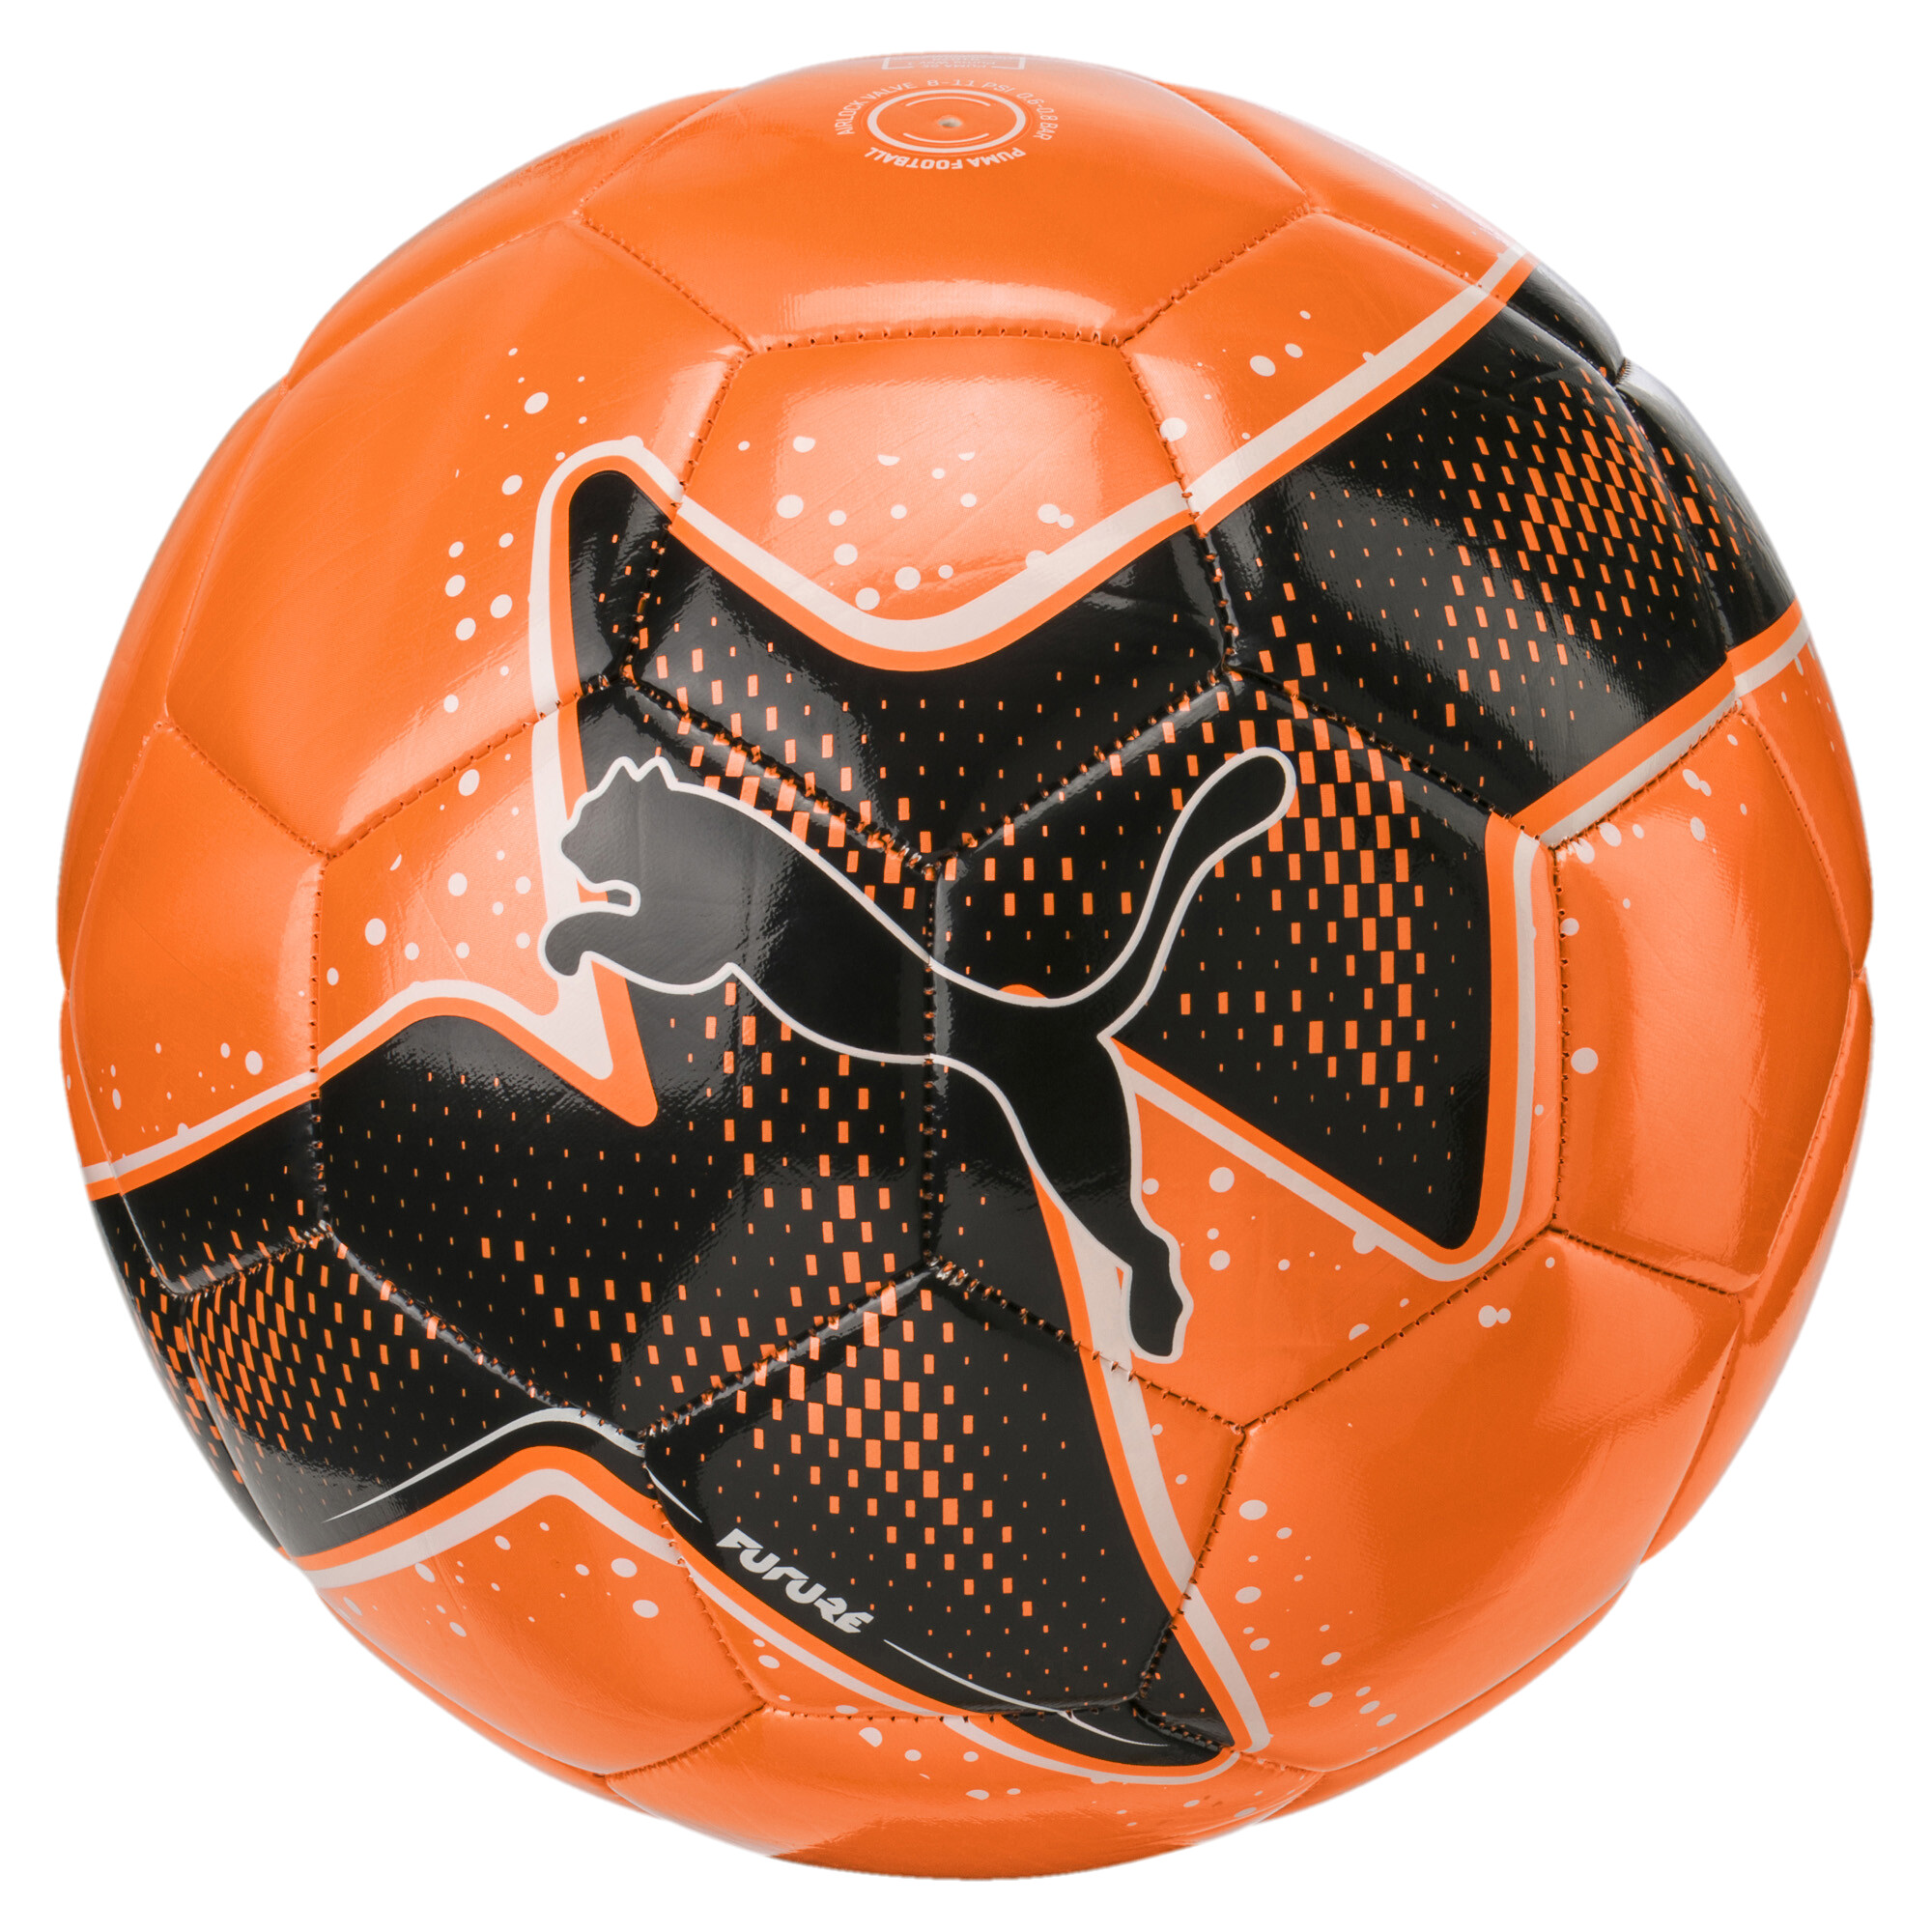 FUTURE Pulse ball | Orange - PUMA